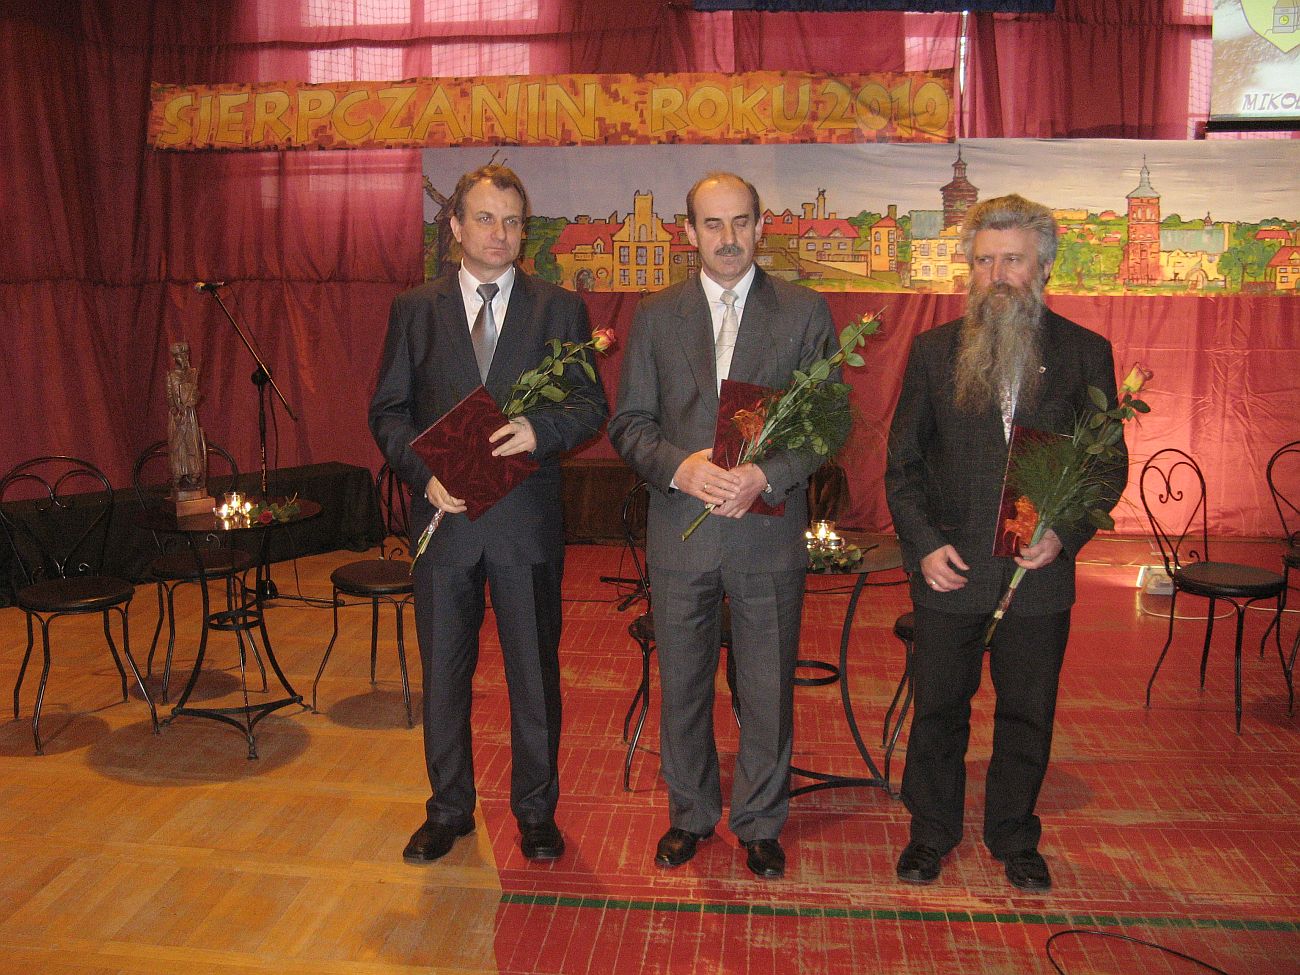 Już trójka nominowanych na scenie: od prawej Paweł B. Gąsiorowski, Michał Głowacki i Józef Urbański.